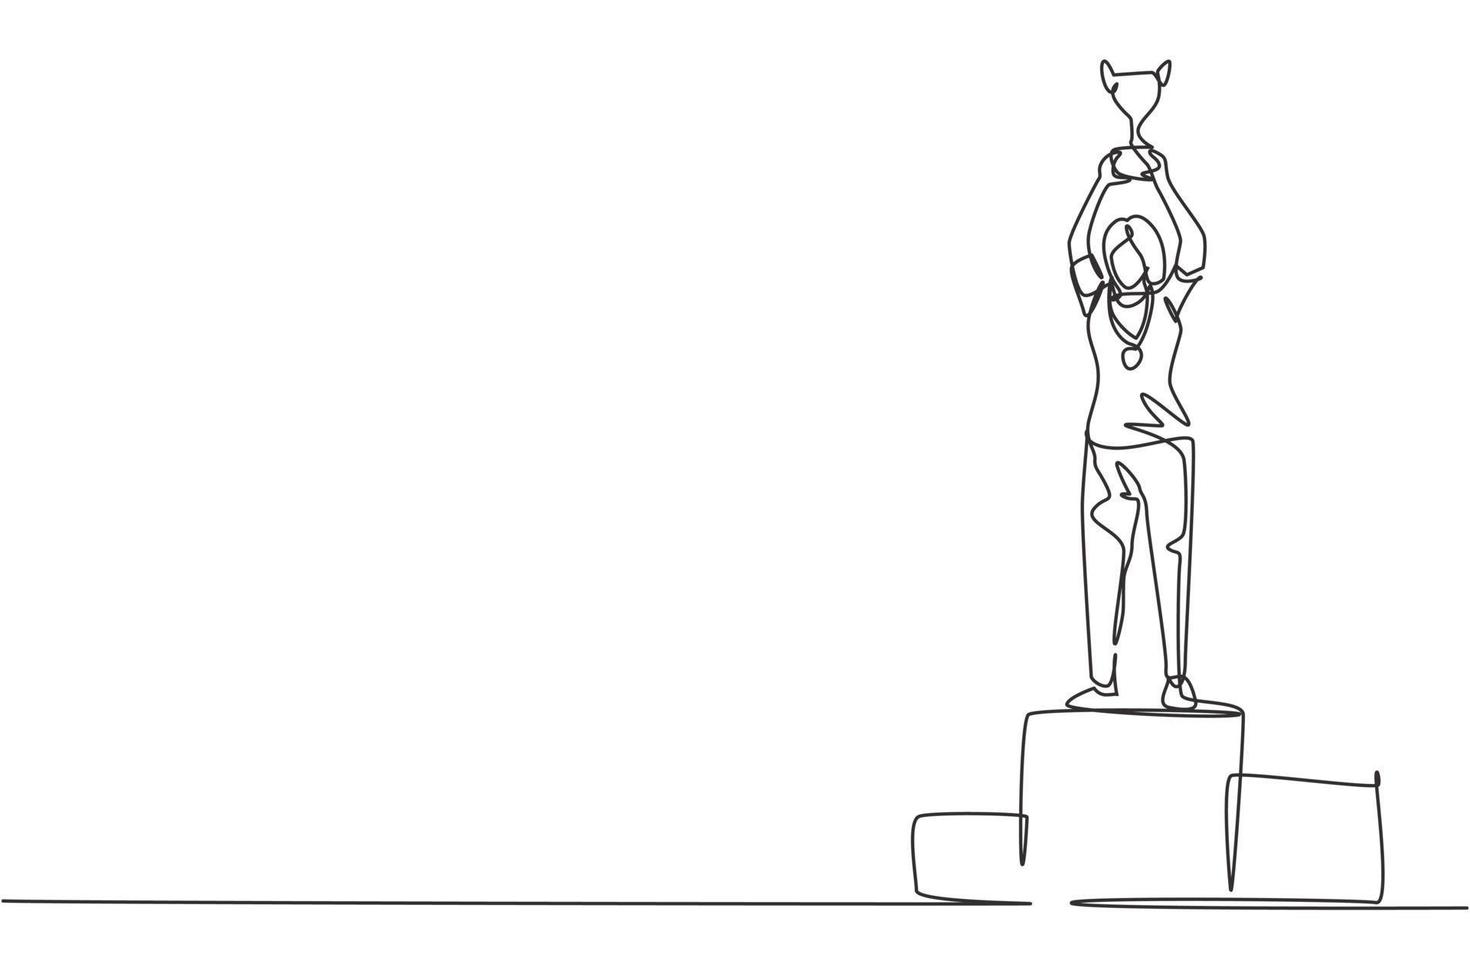 atleta femminile di disegno continuo a una linea che indossa una maglia sportiva che solleva il trofeo d'oro con entrambe le mani sul podio. festeggiando la vittoria del campionato. illustrazione grafica vettoriale di disegno di disegno a linea singola